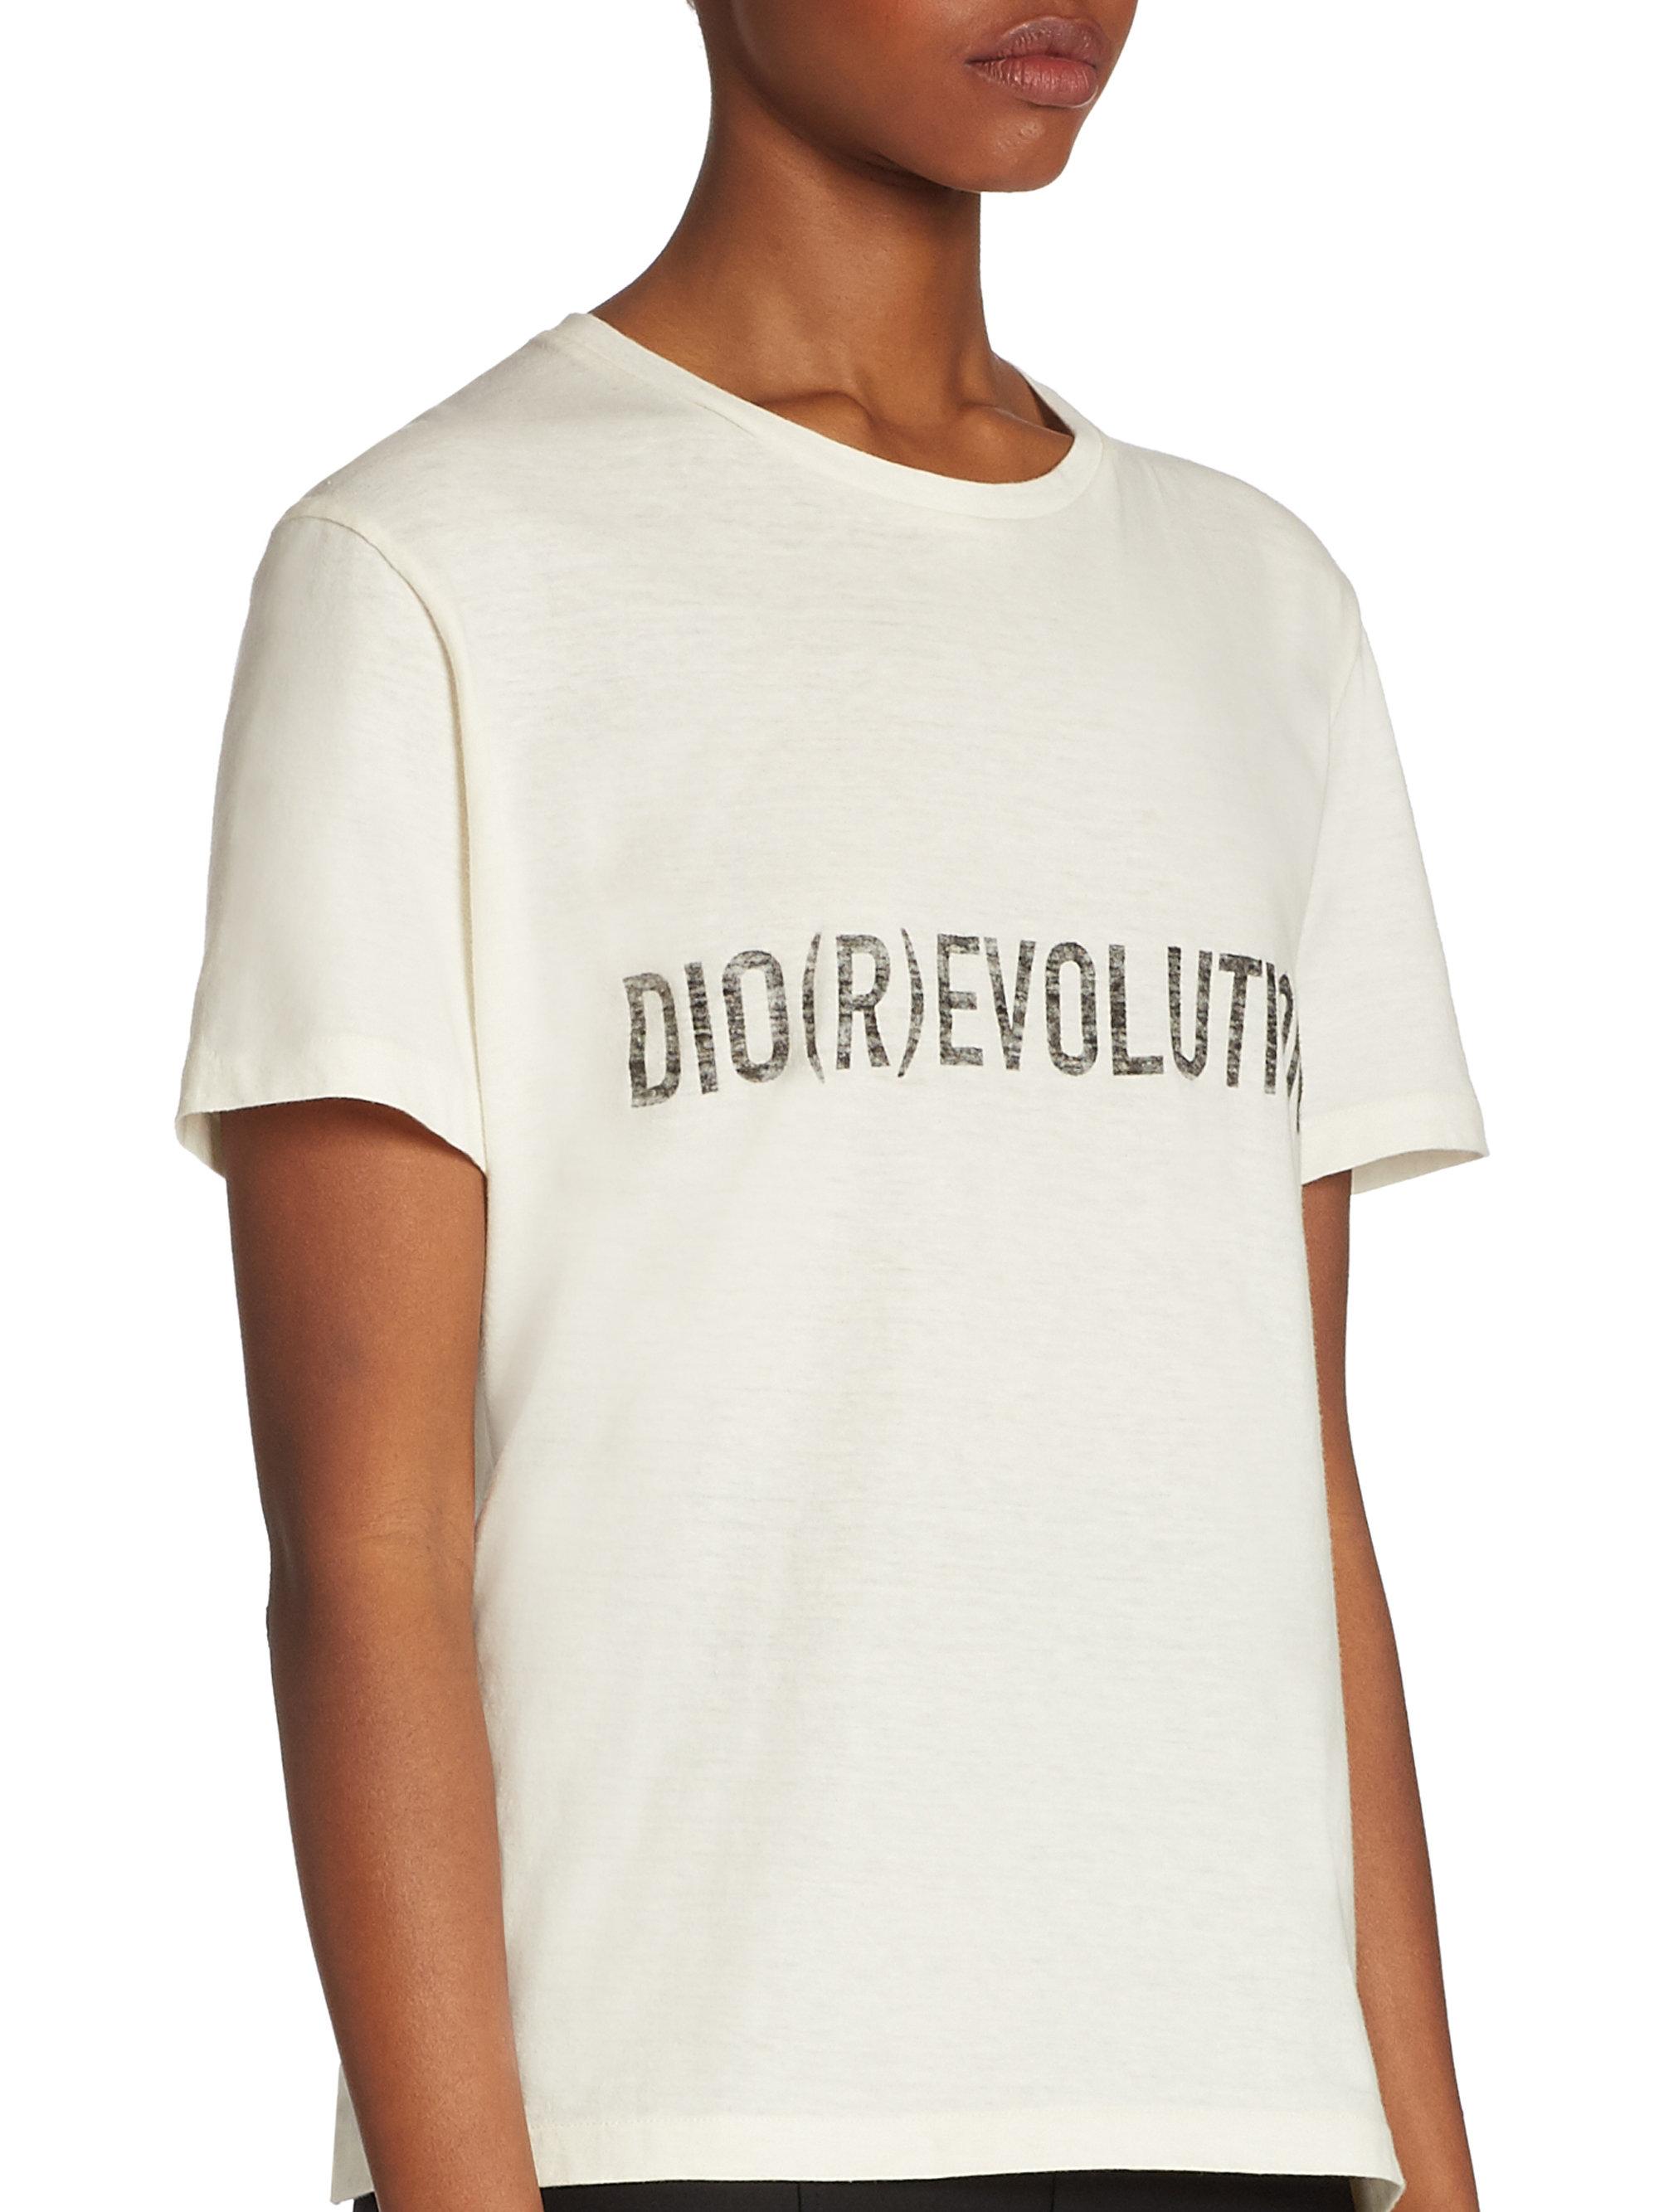 Dior Revolution T-shirt in White | Lyst